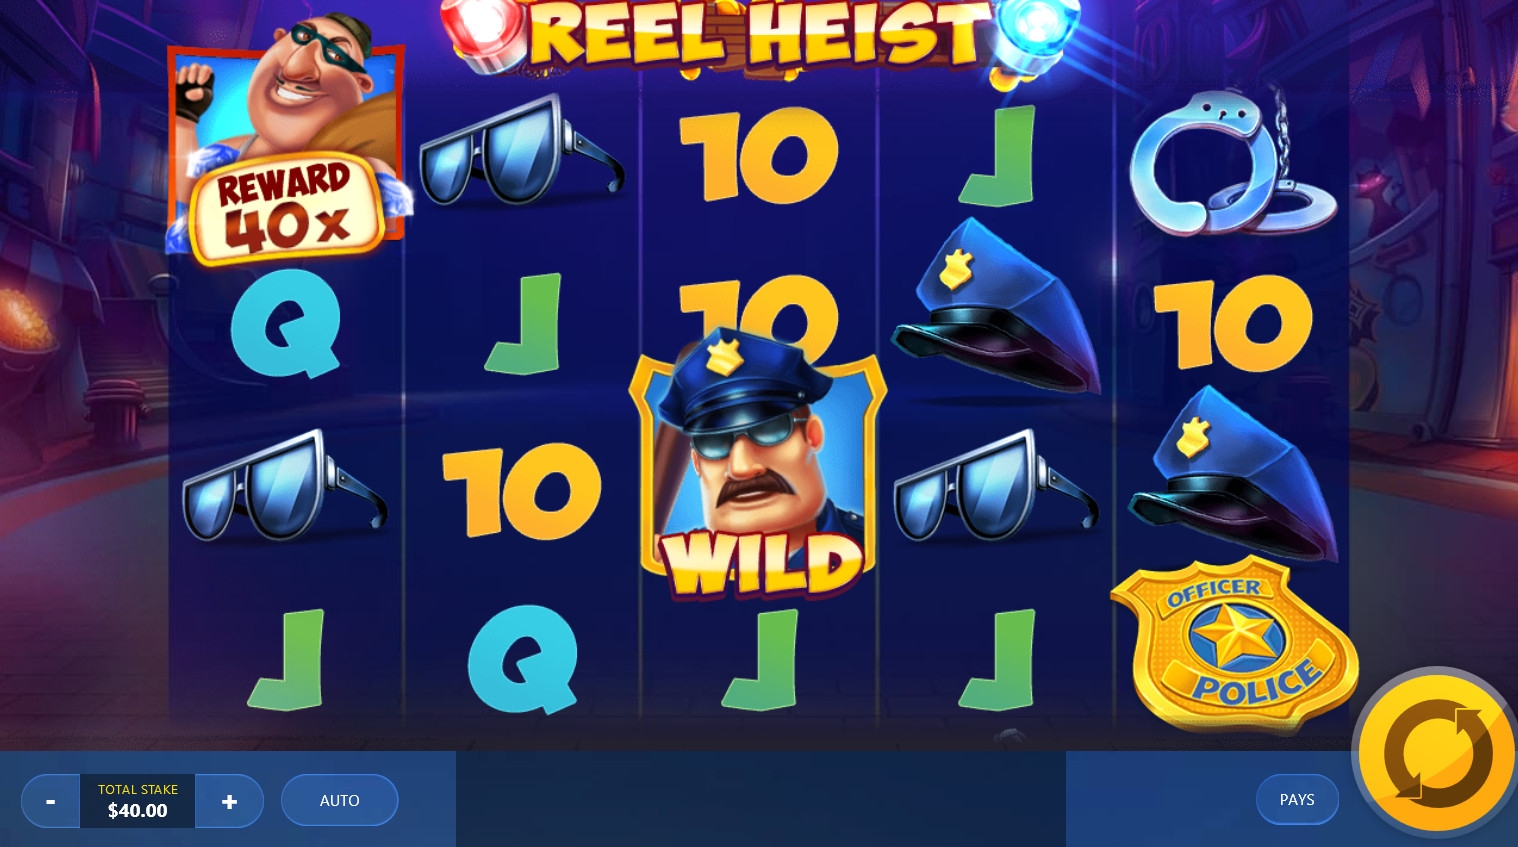 Reel Heist (Reel Heist) from category Slots